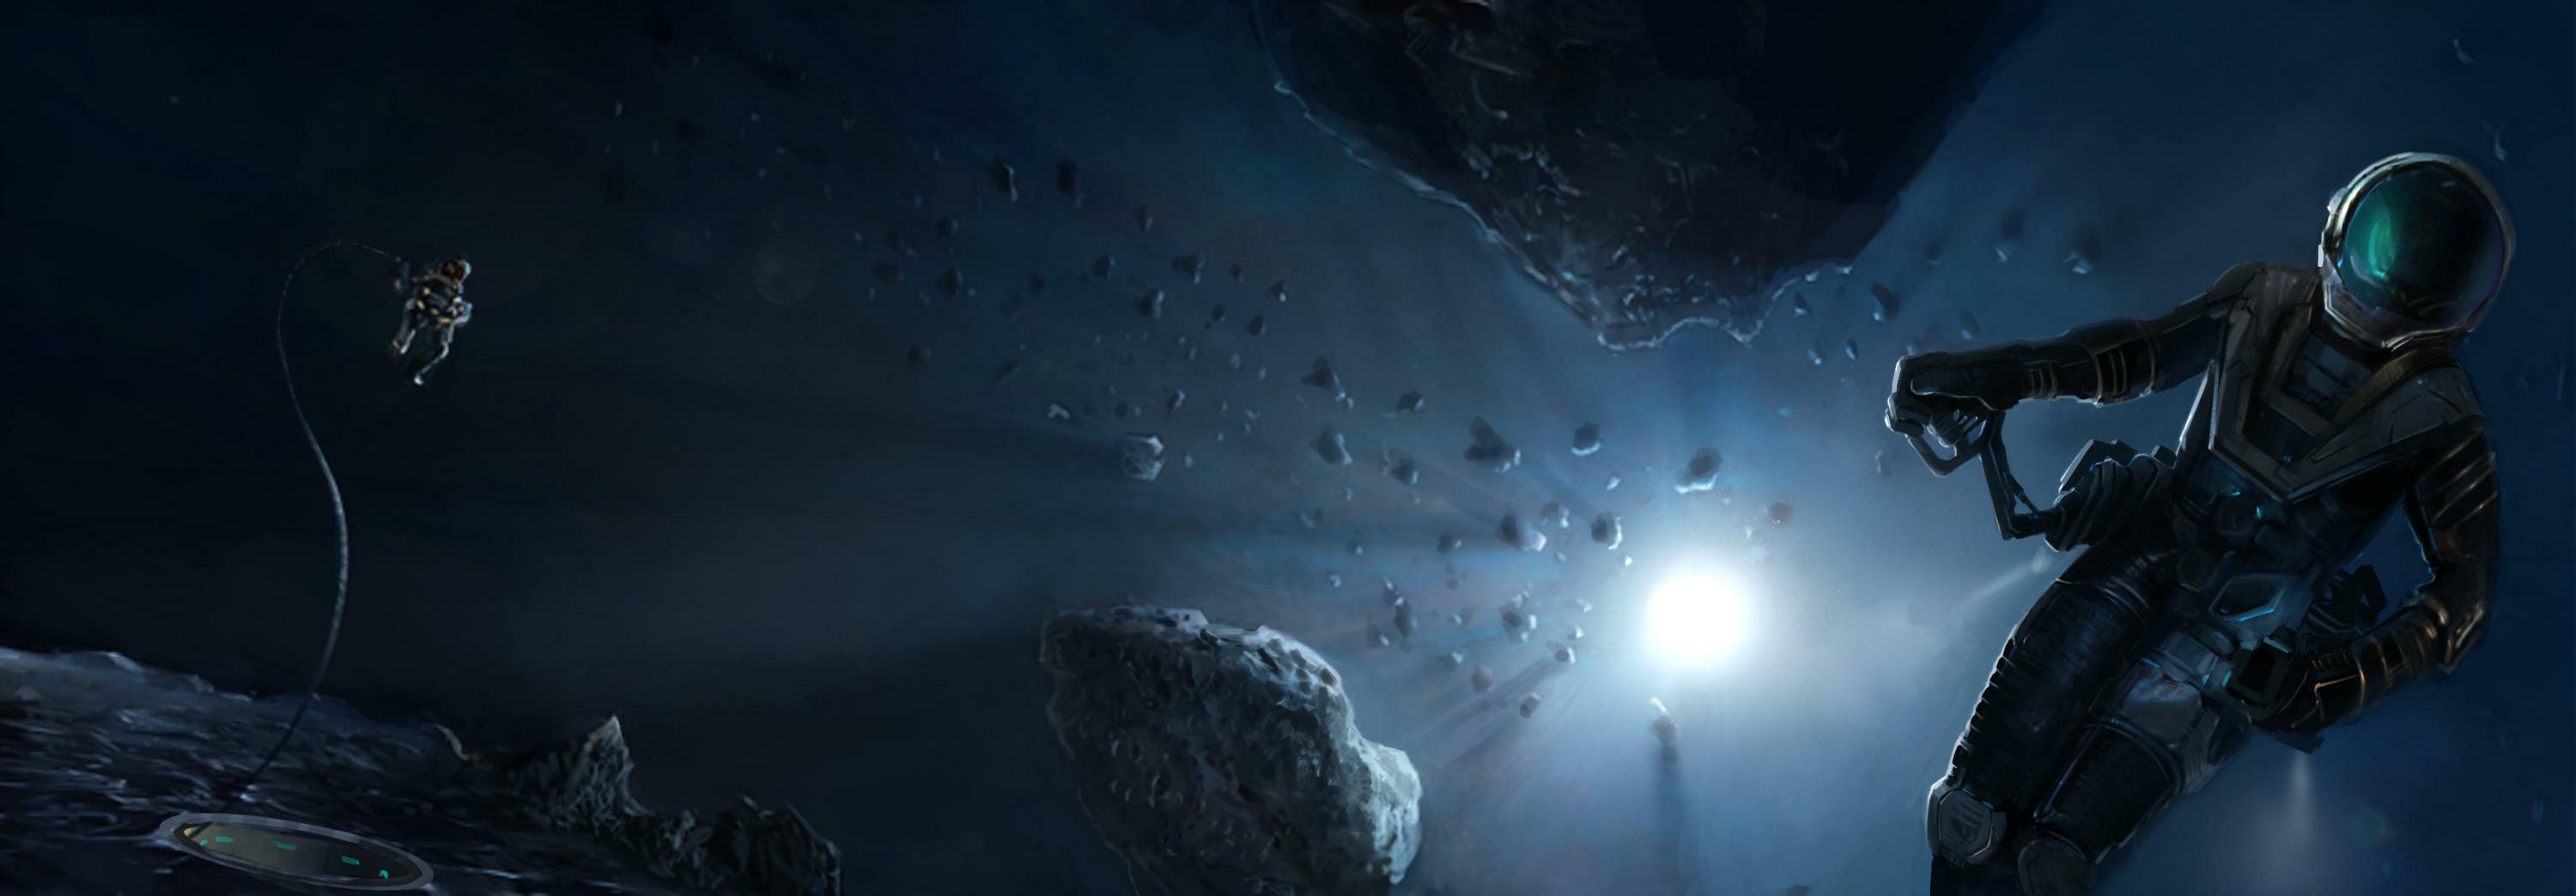 Cosmonautes dans unchamp d'astéroïdes